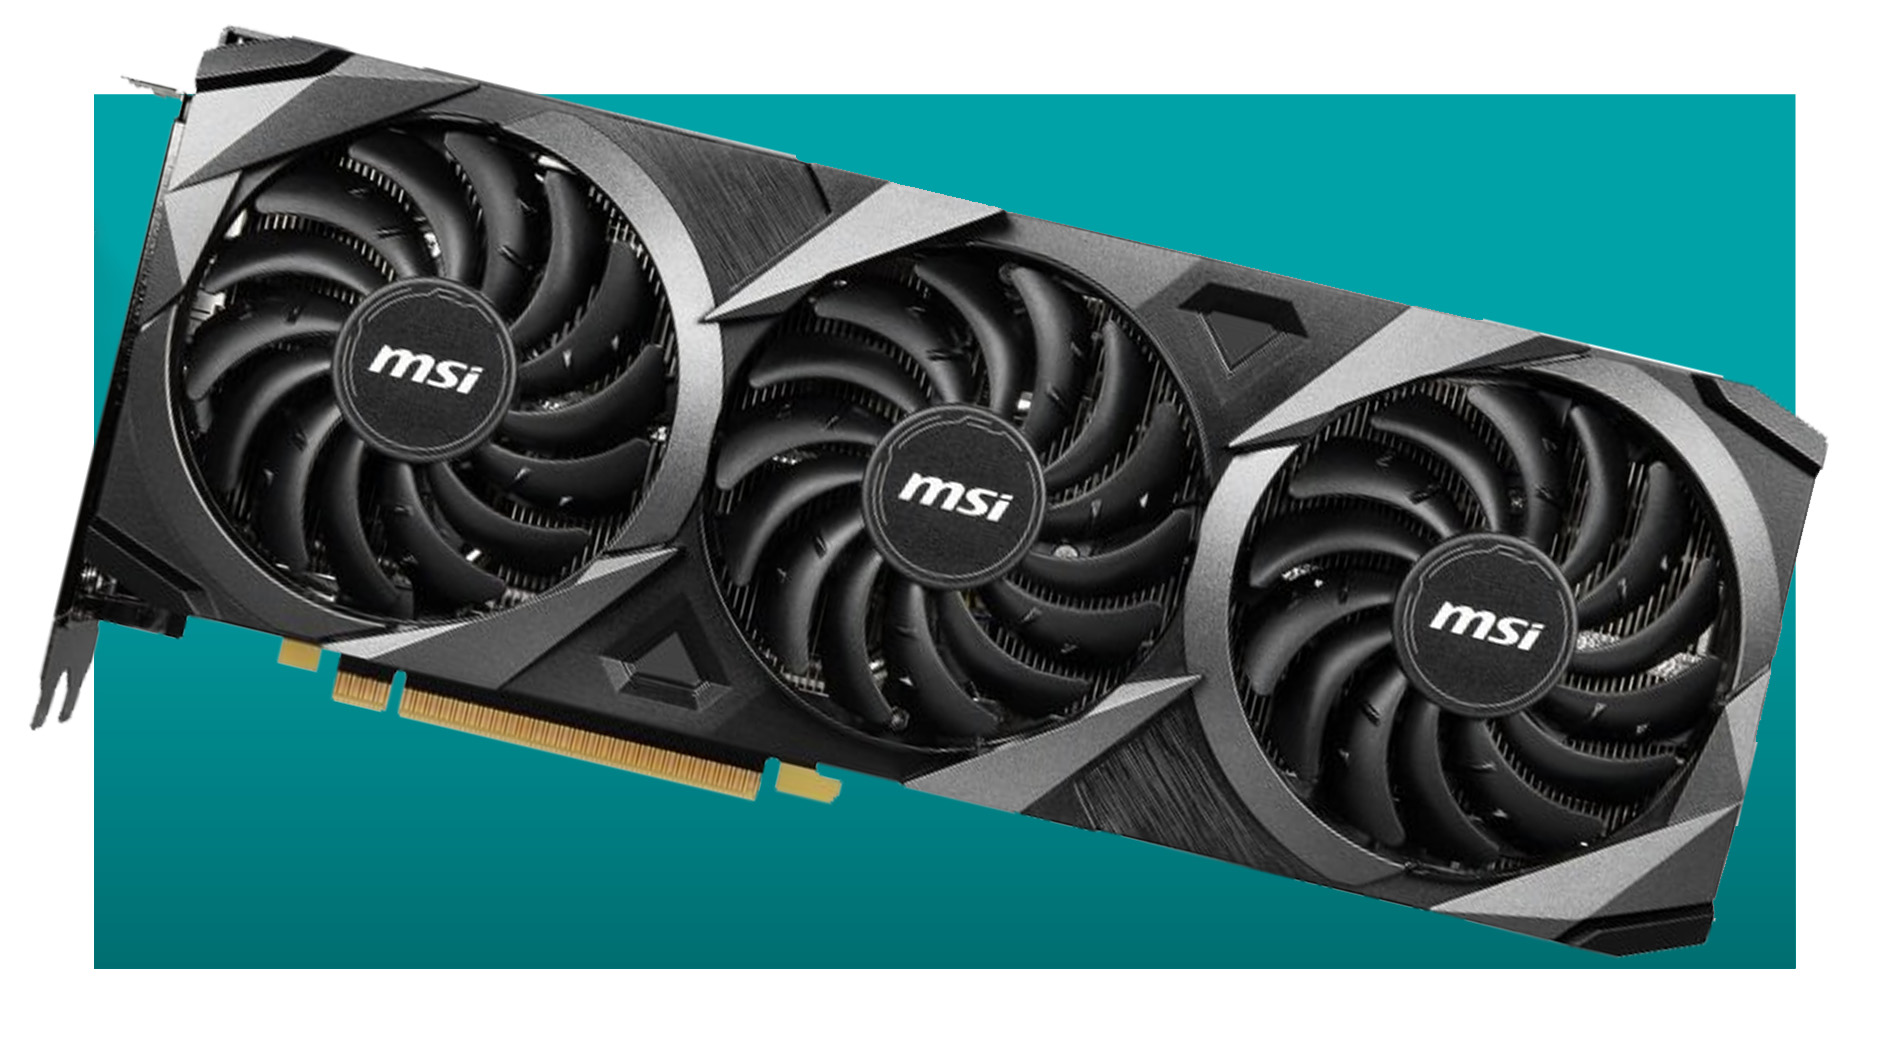 GPU anlaşması: Nvidia, 'yeniden stoklanmış ve yeniden yüklenmiş' satışta bir avuç RTX 30 serisi grafik kartı için fiyatları düşürdü